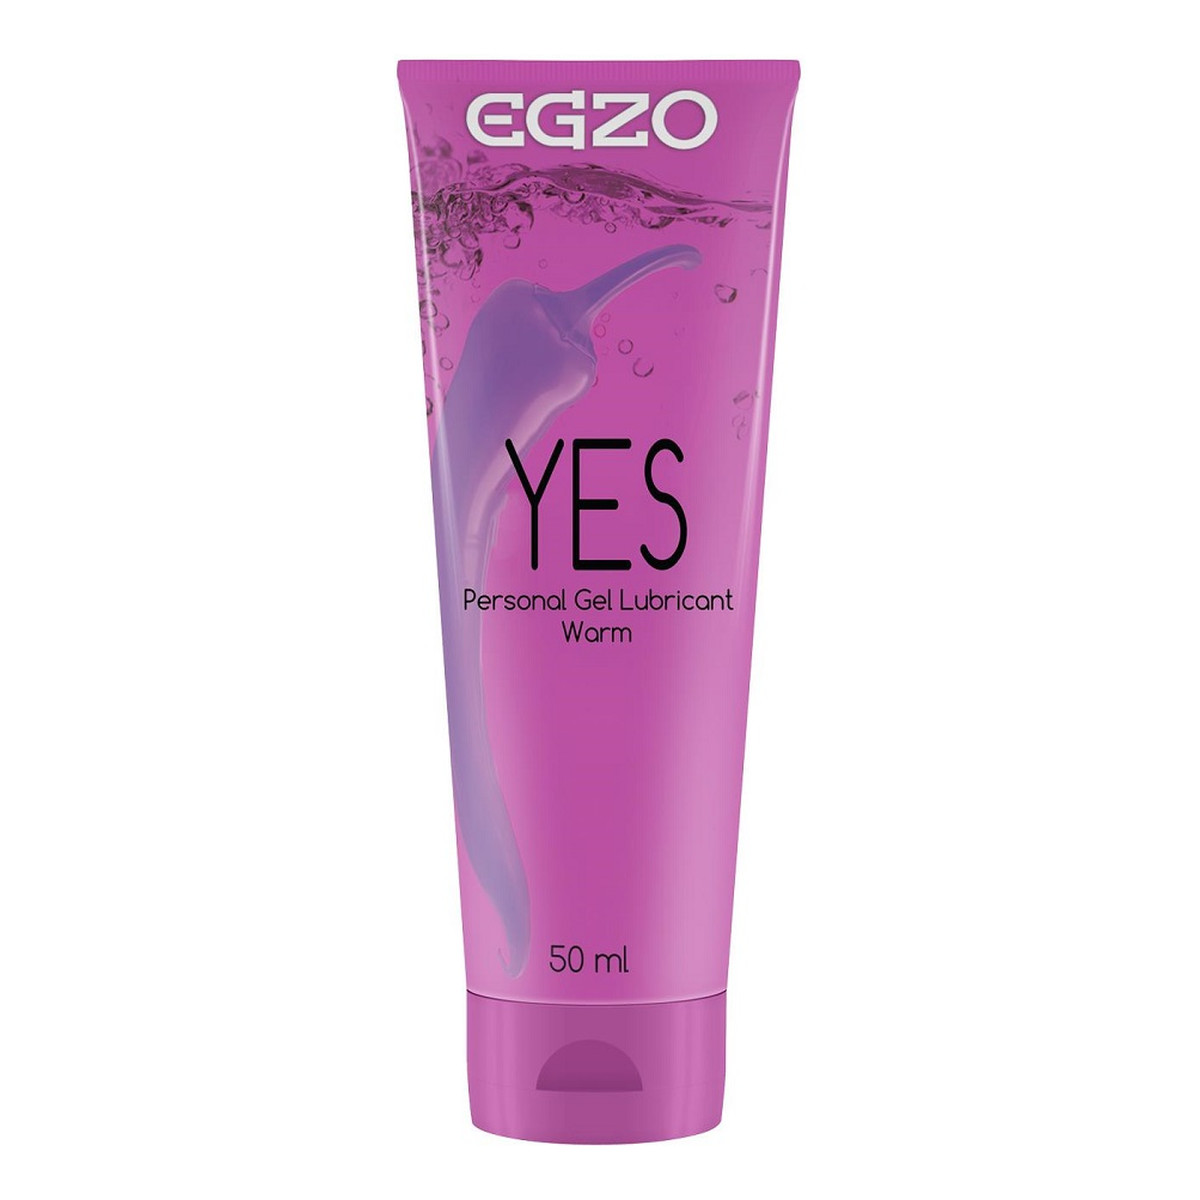 Egzo Yes personal gel lubricant stymulująco-rozgrzewający lubrykant 50ml